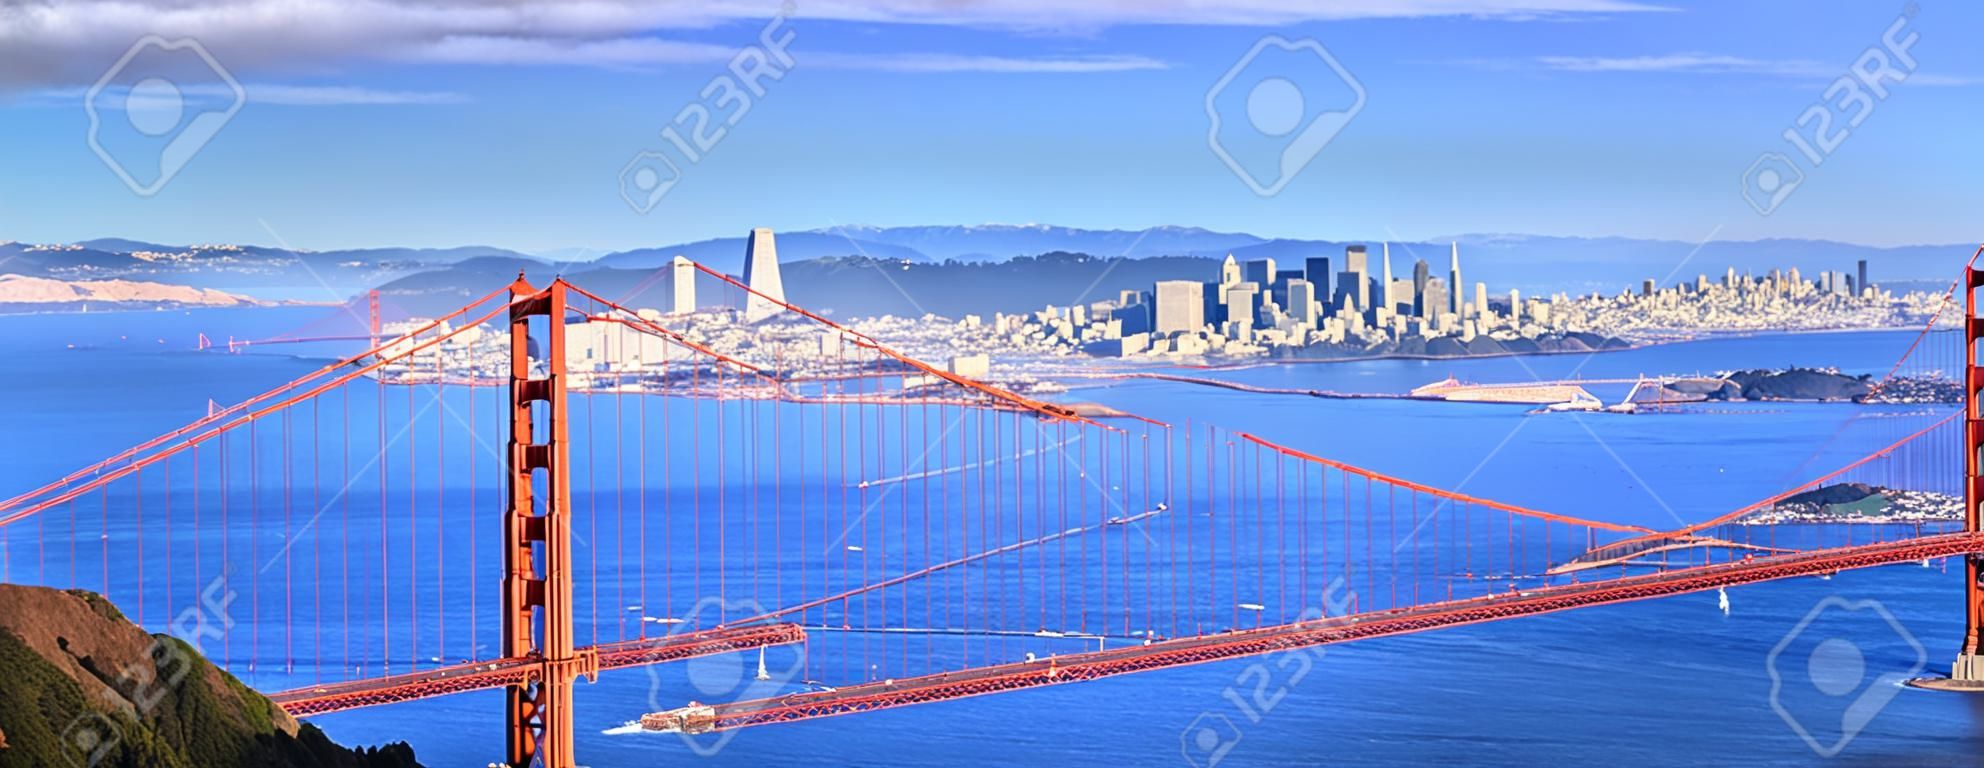 Vista panorâmica da famosa Golden Gate Bridge e do centro de São Francisco